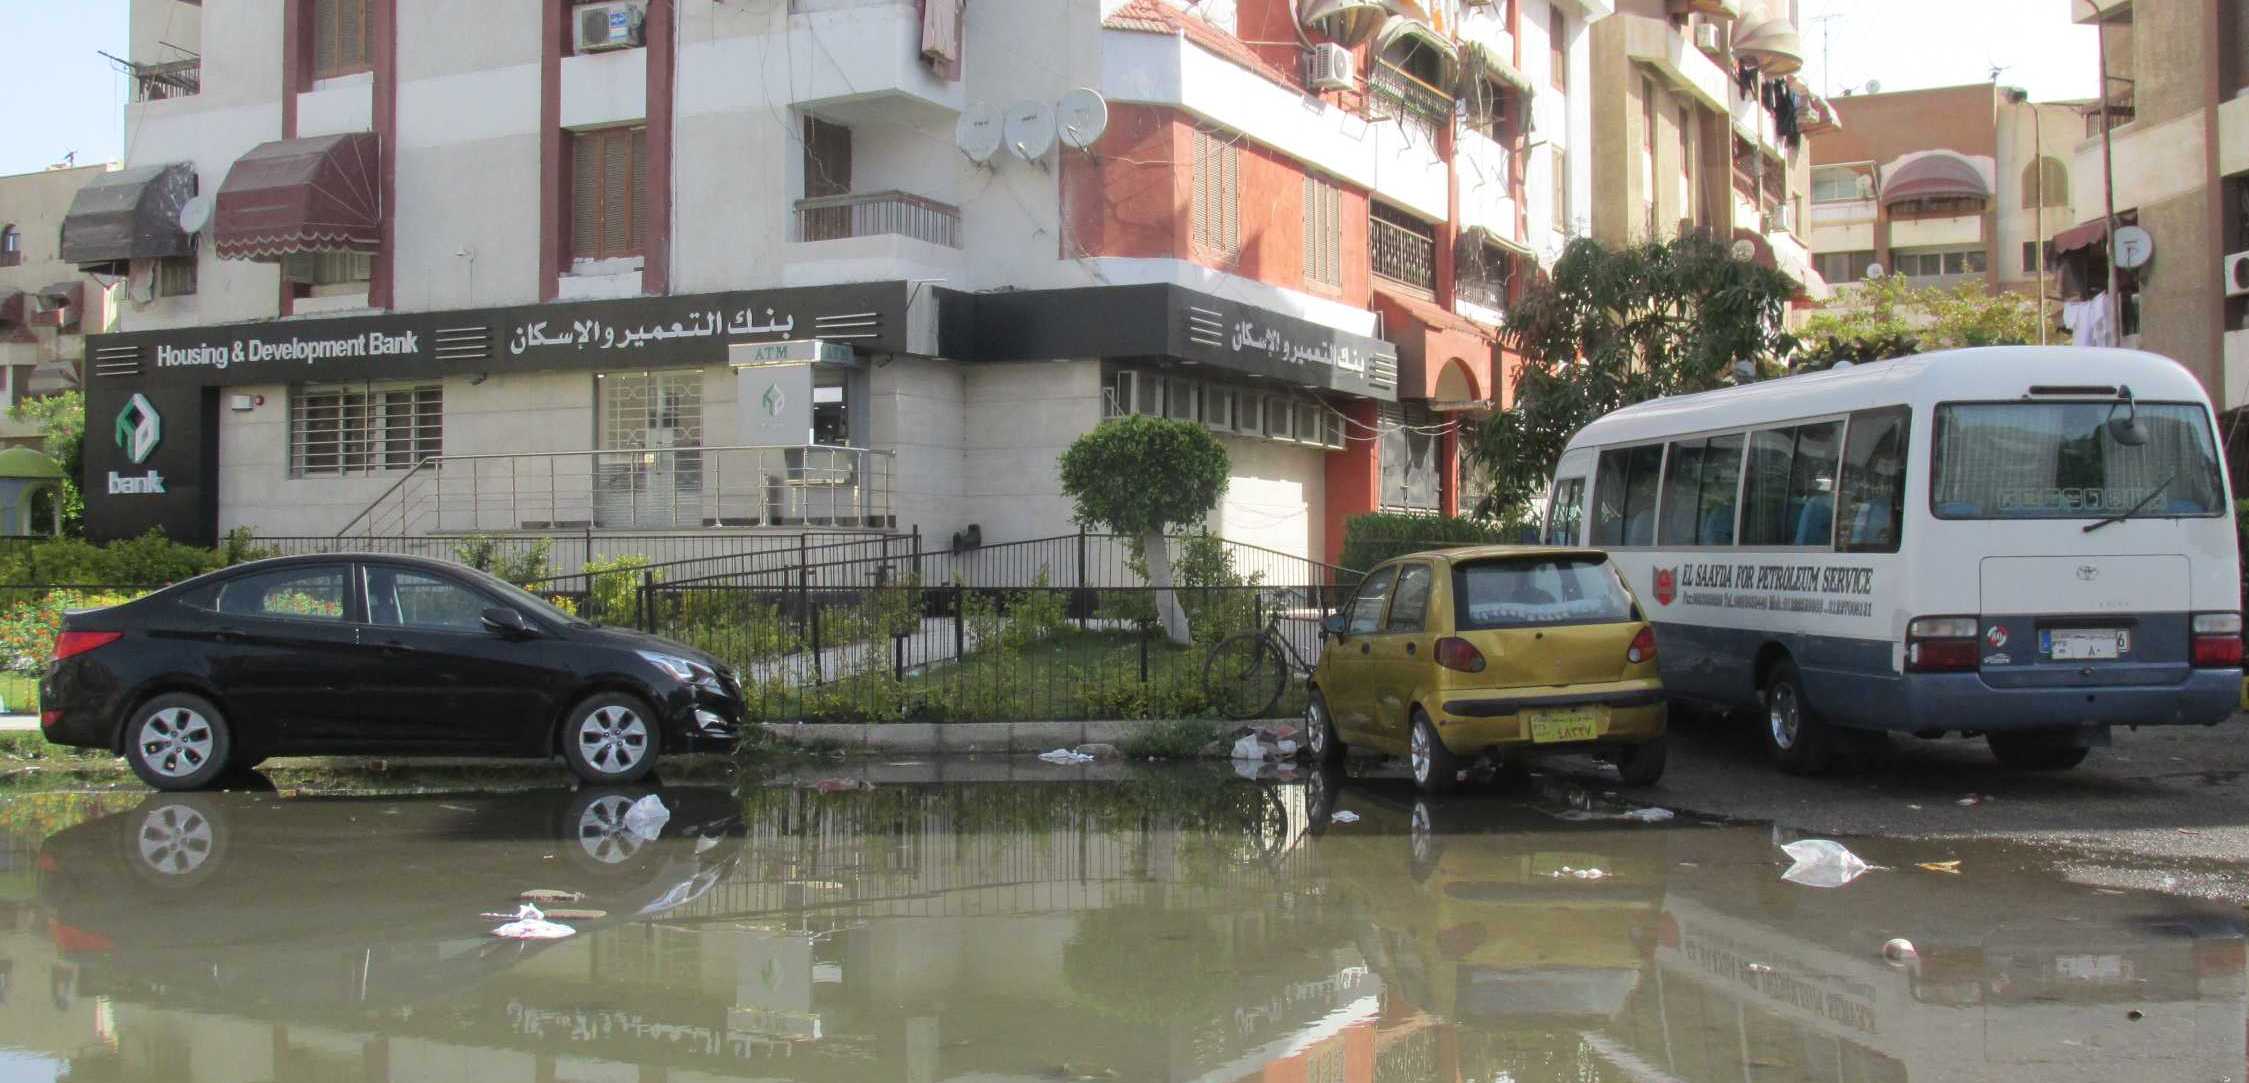 مياه الصرف الصحى تغرق شارع عمومى ببورسعيد (1)